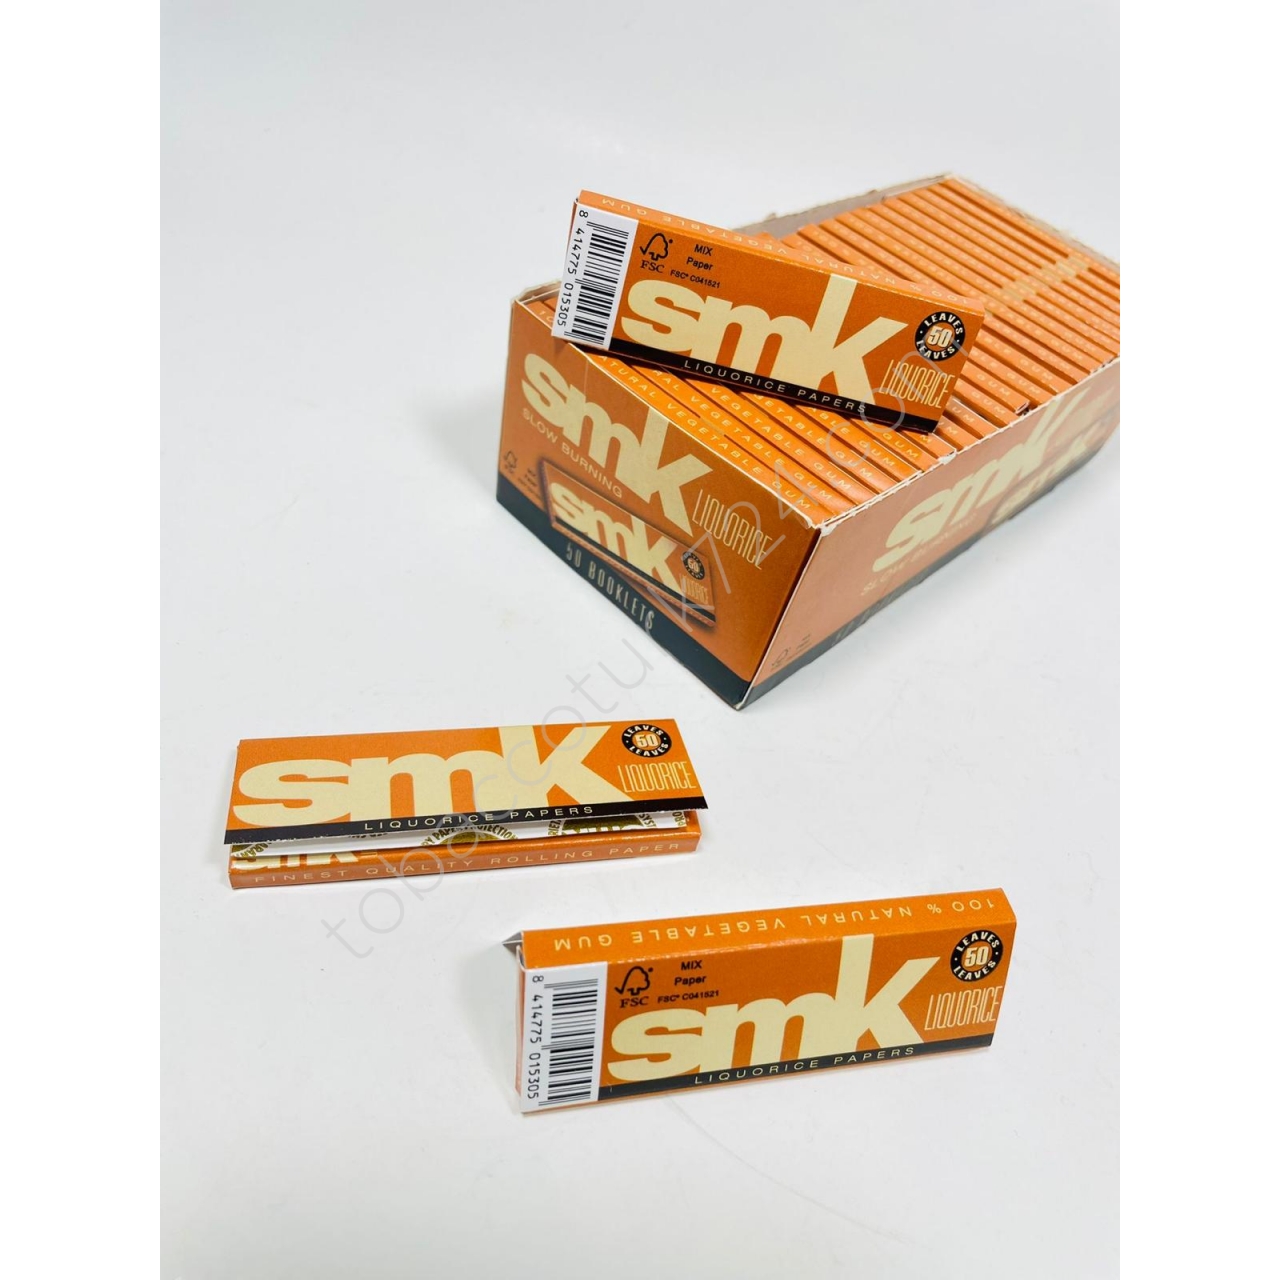 Smk Marka Likörlü Sigara Sarma Kağıdı KüçükBoy //70mm